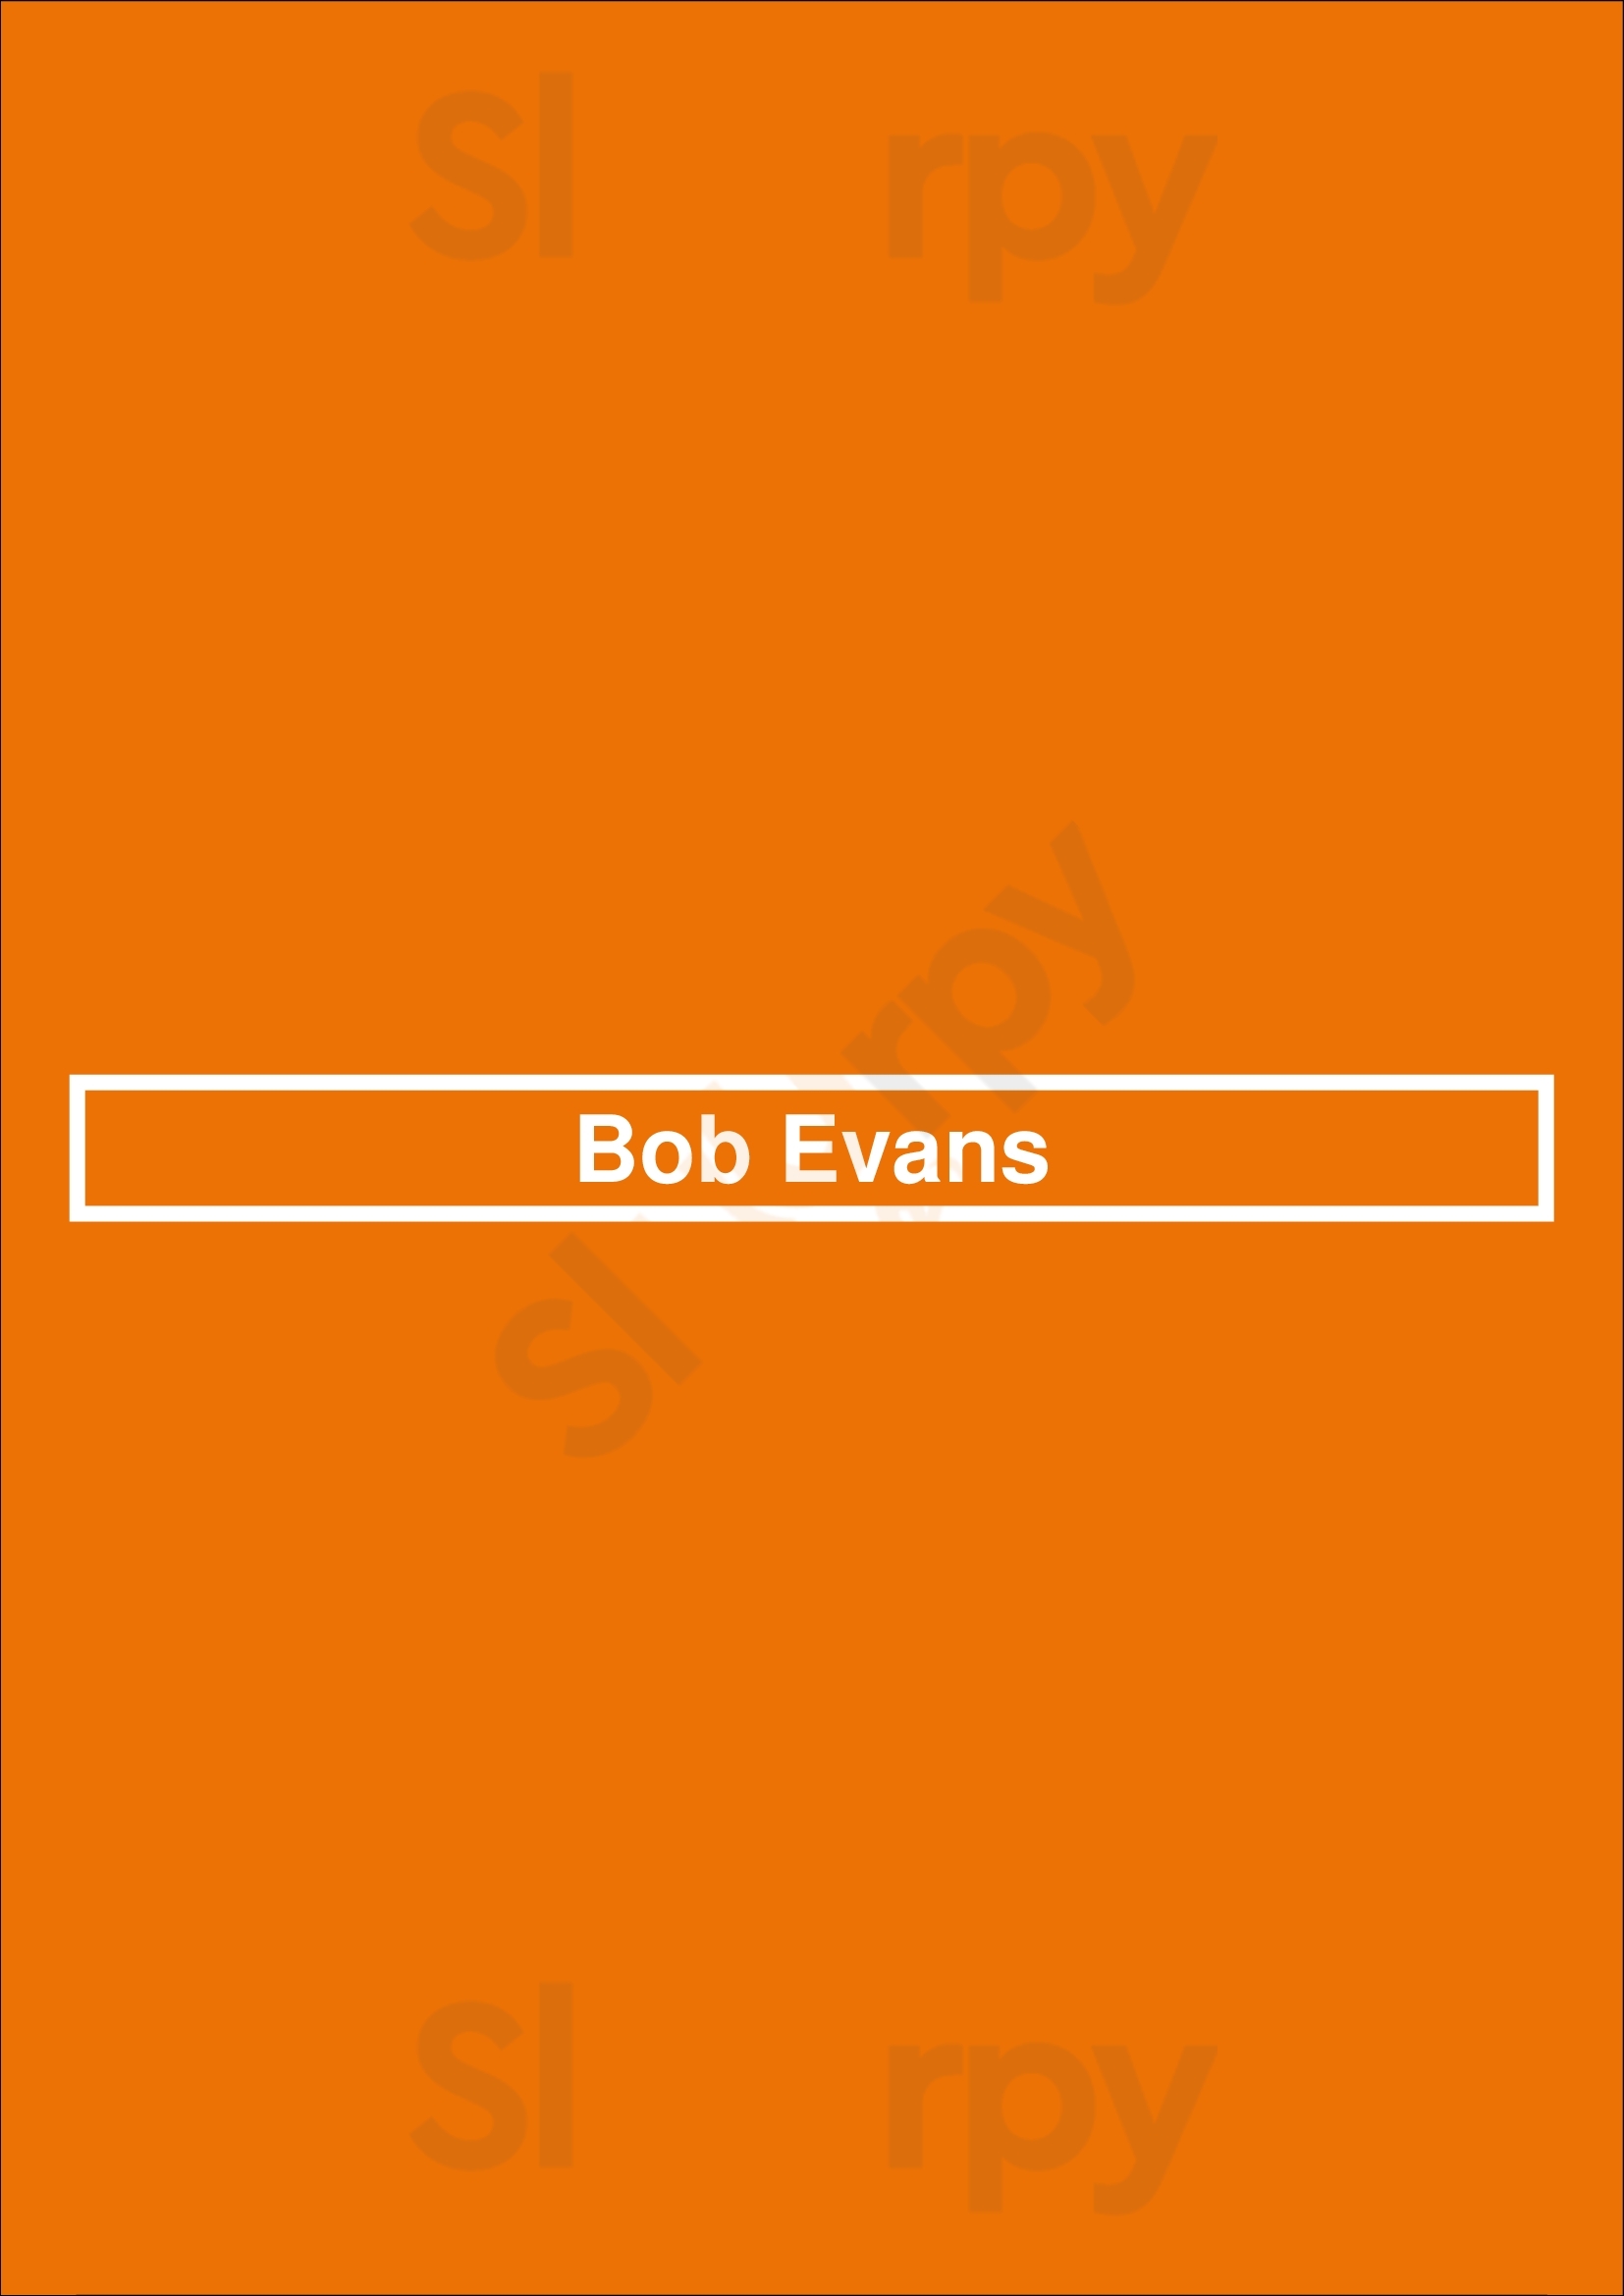 Bob Evans Lansing Menu - 1